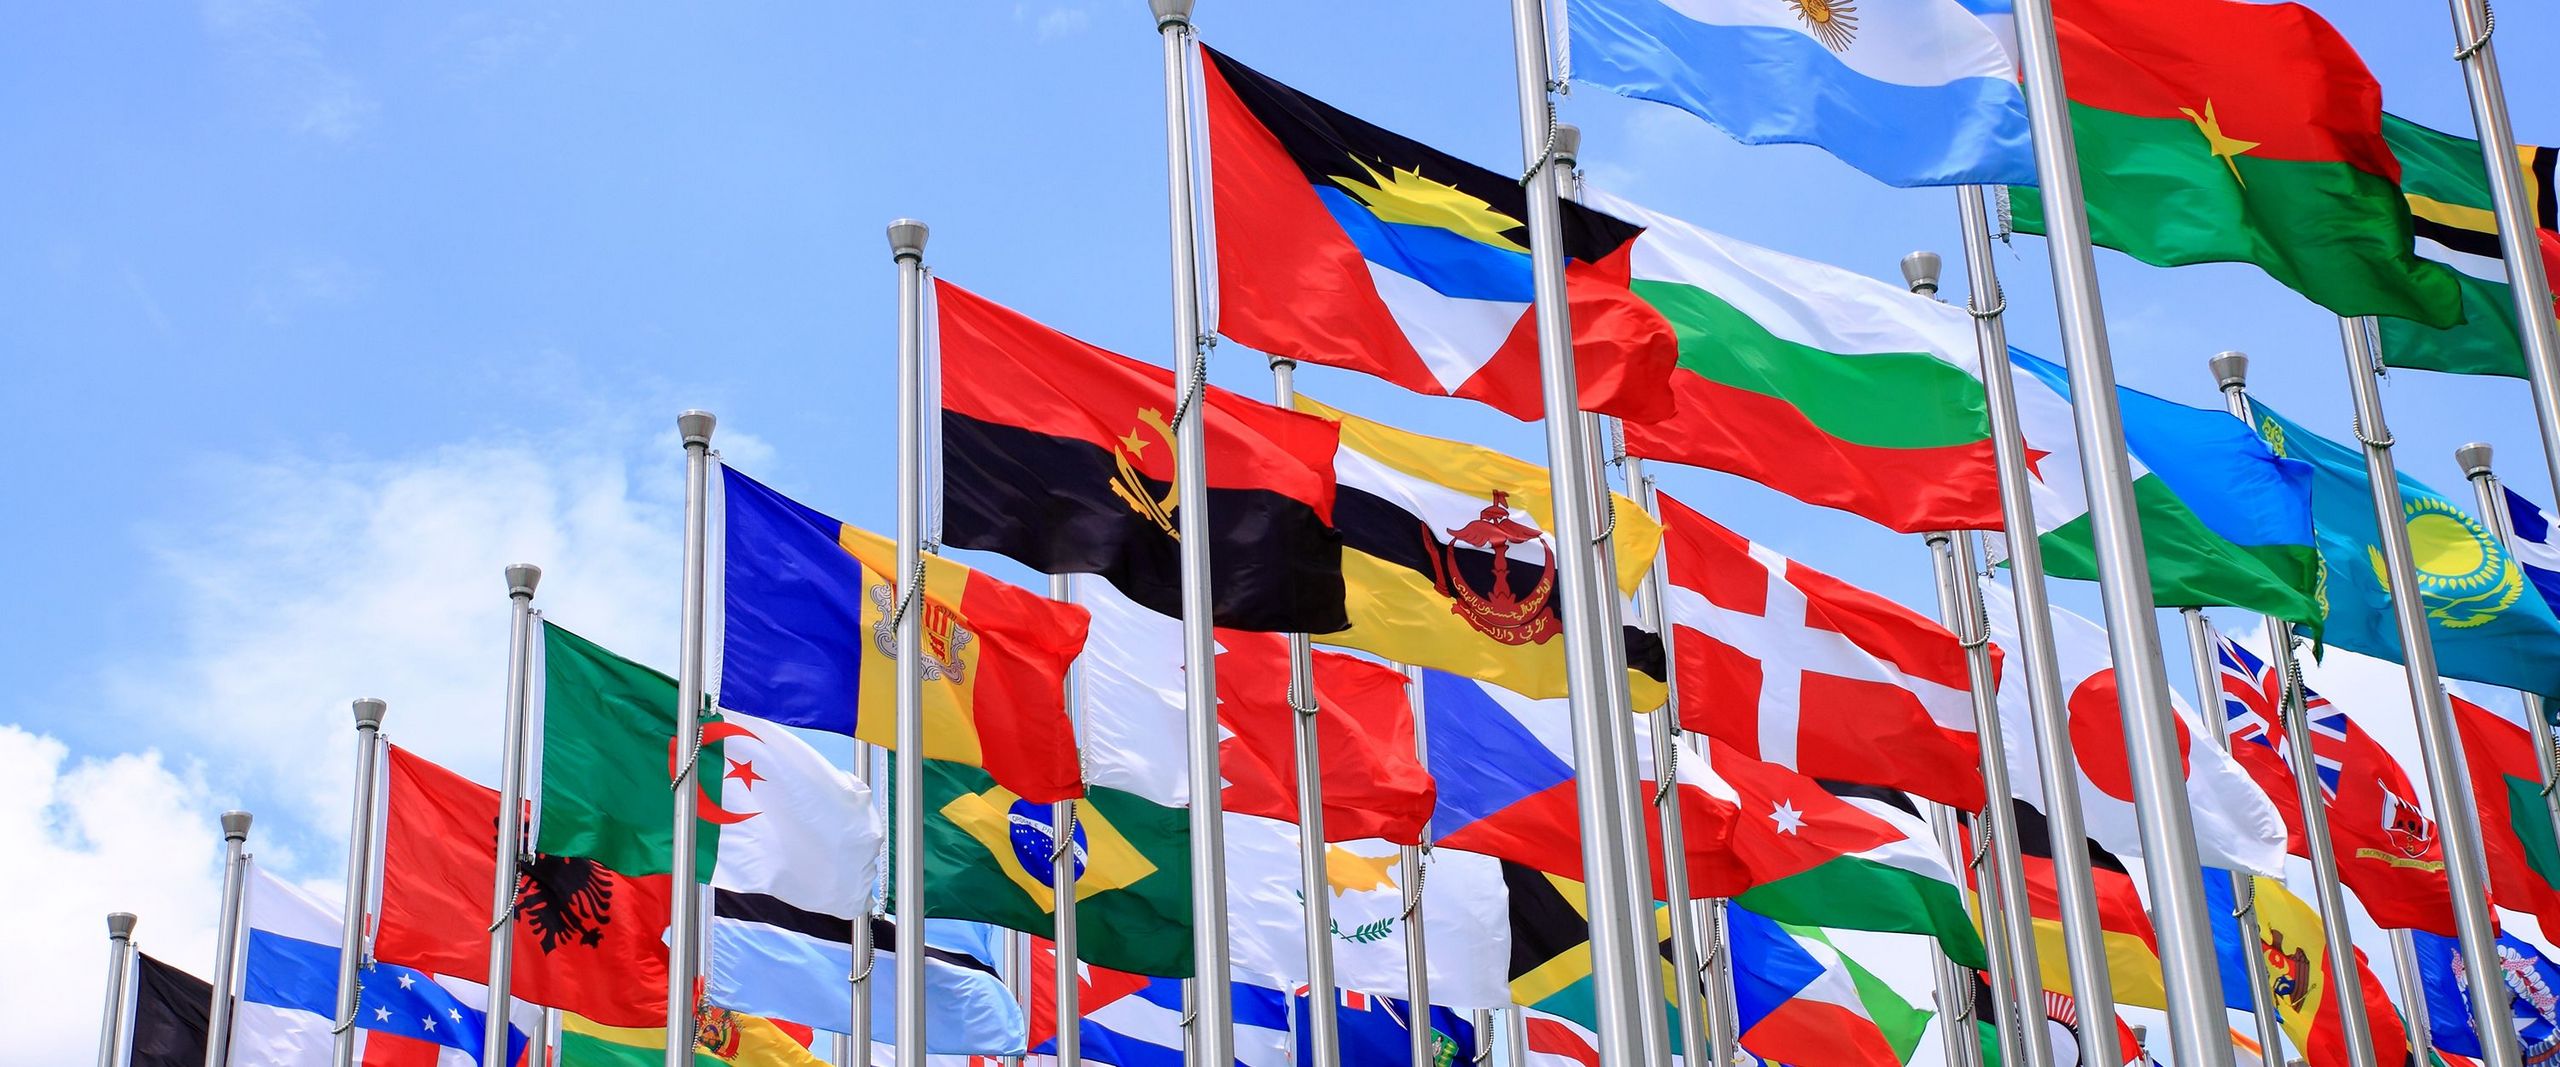 Flaggen verschiedener Länder vor blauem Himmel